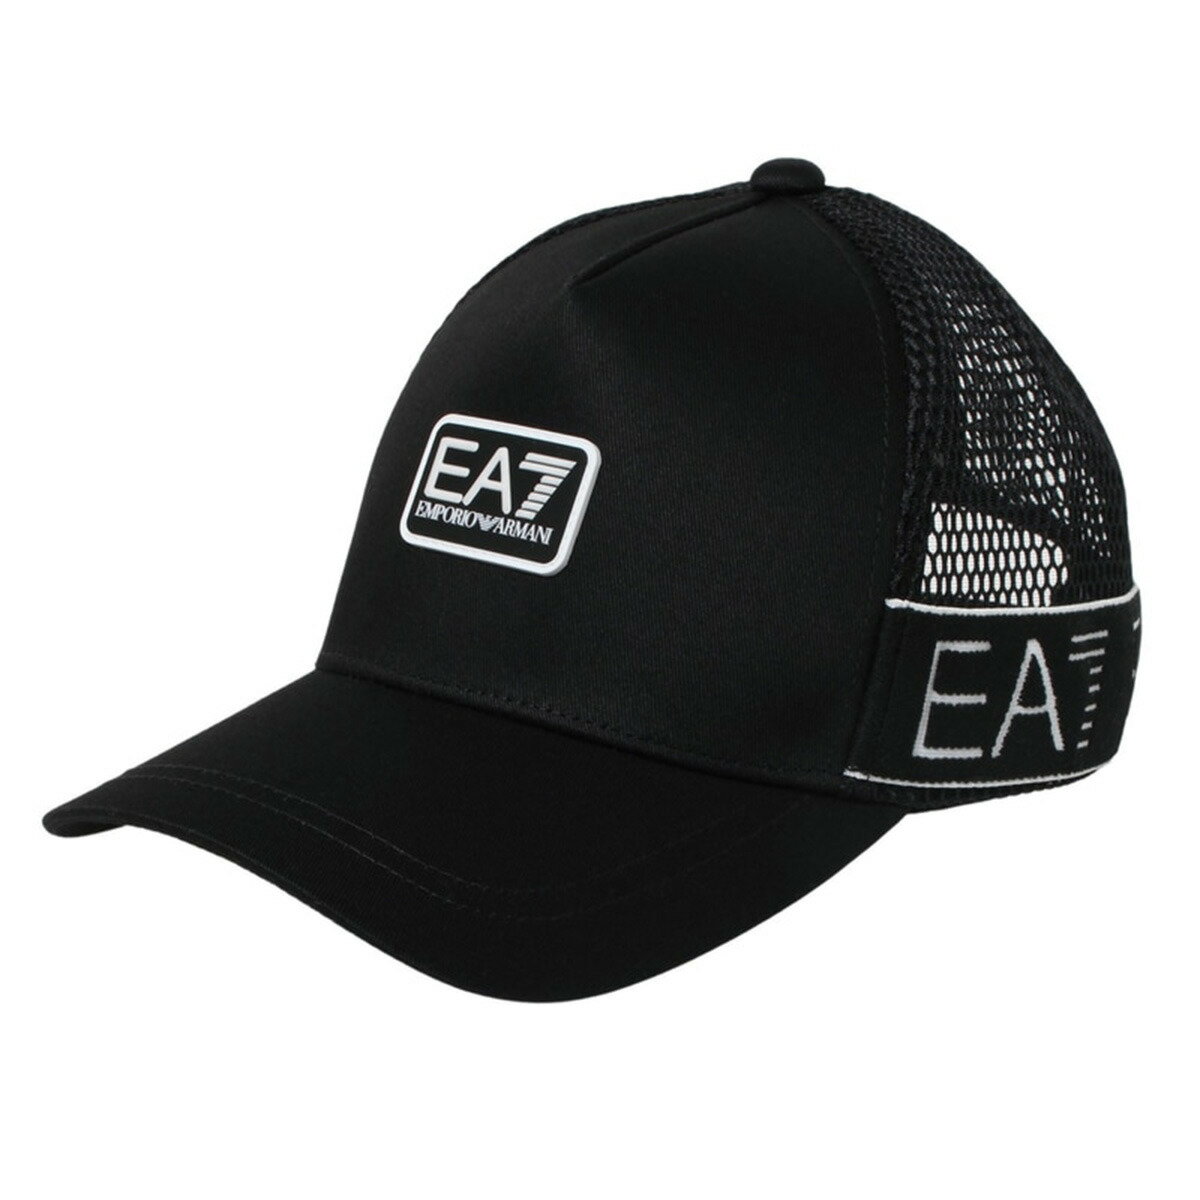 アルマーニ イーエーセブン EA7 エンポリオ アルマーニ EMPORIO ARMANI 帽子 キャップ 274992 2R103 00020 メッシュキャップ BLACK ブラック